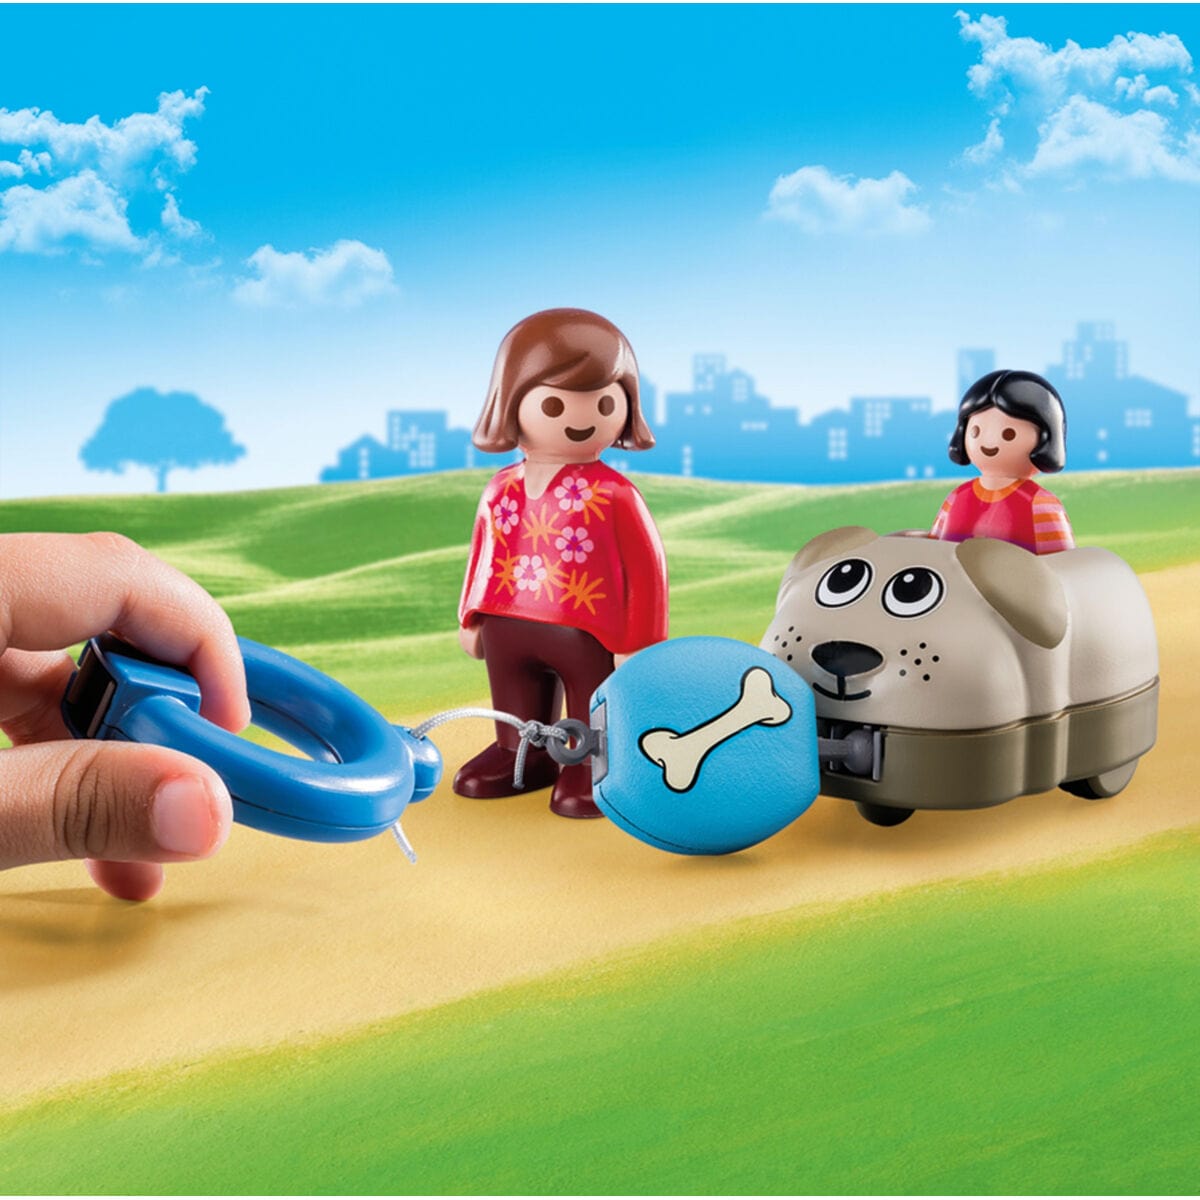 Playmobil Spielzeug | Kostüme > Spielzeug und Spiele > Weiteres spielzeug Playset Playmobil 1.2.3 Hund Kinder 70406 (6 pcs)